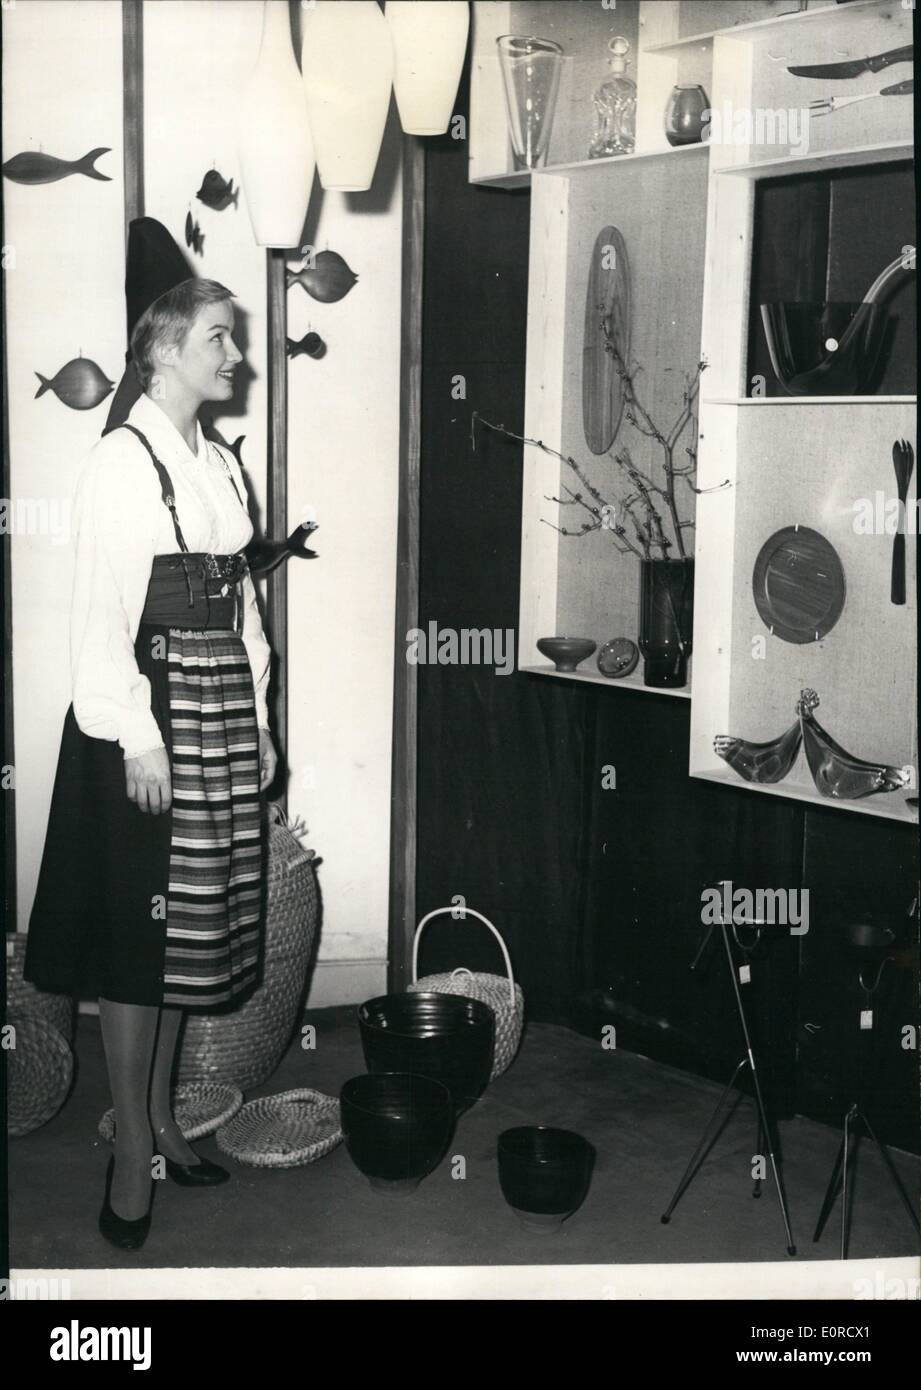 Mar 03, 1959 - Scandinavian mostra a Parigi: una mostra della ceramica scandinavo, basket-lavoro, bicchieri aperto a Parigi per giorno. La foto mostra una ragazza svedese in abito nazionale che mostra diverse cose fatte nel suo paese. Foto Stock